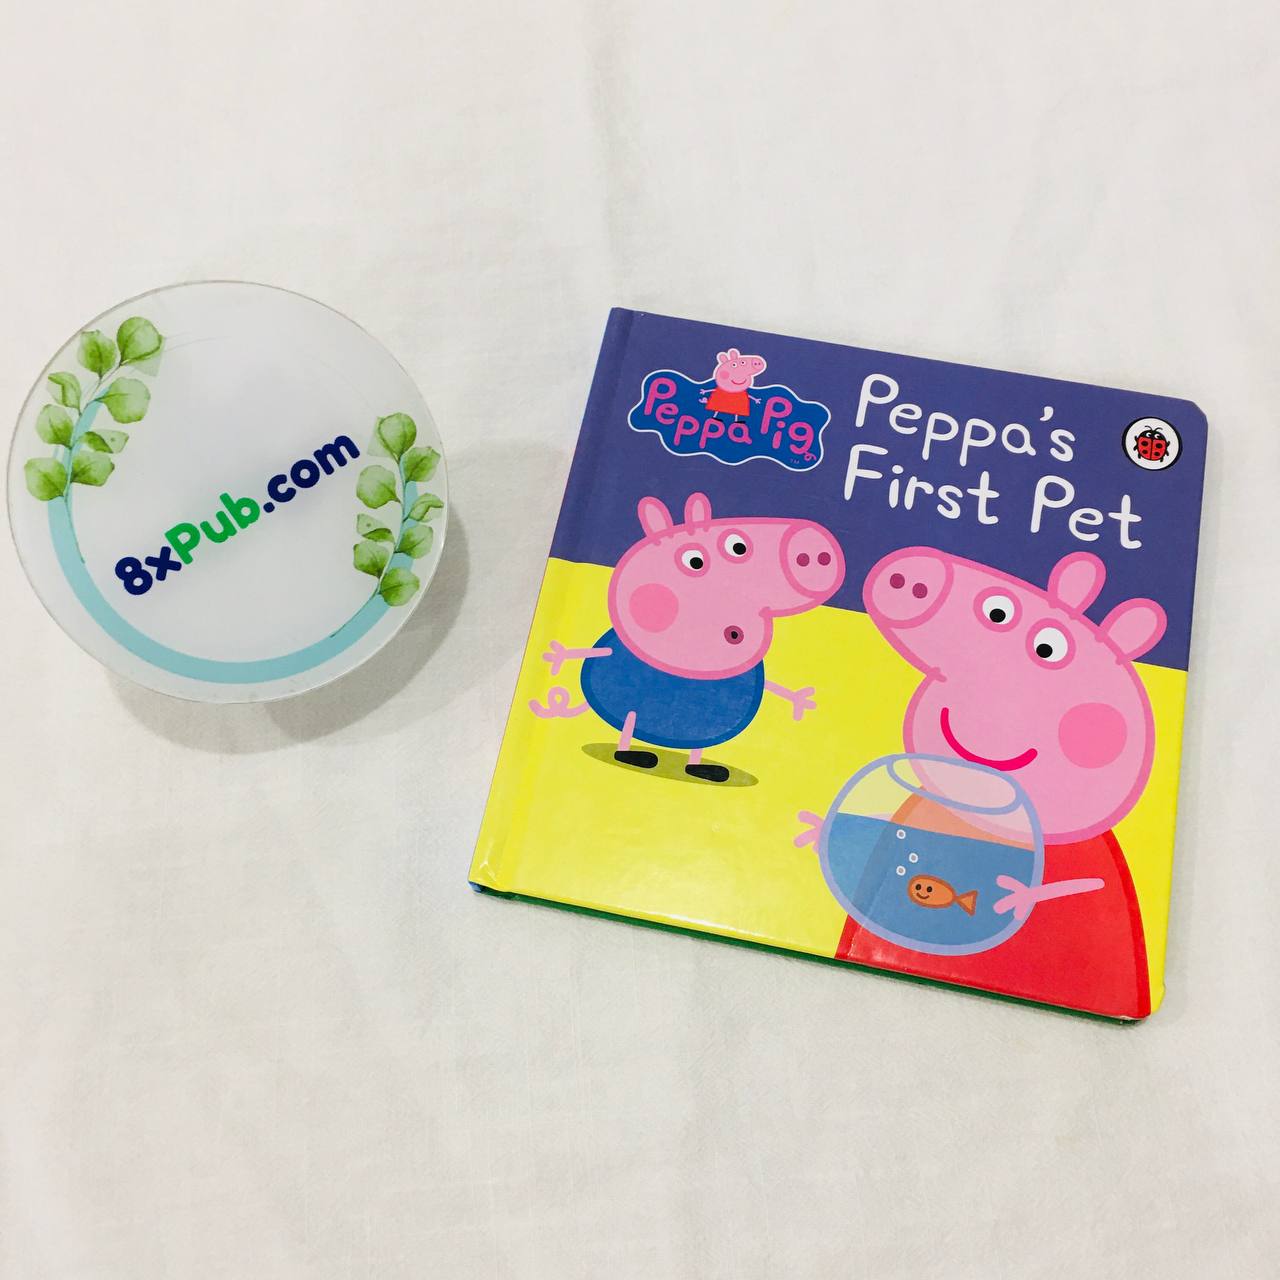 Tuyển tập sách Peppa Pig | Peppa's Big Race , Peppa's First Pet - cho bé 2-5 tuổi